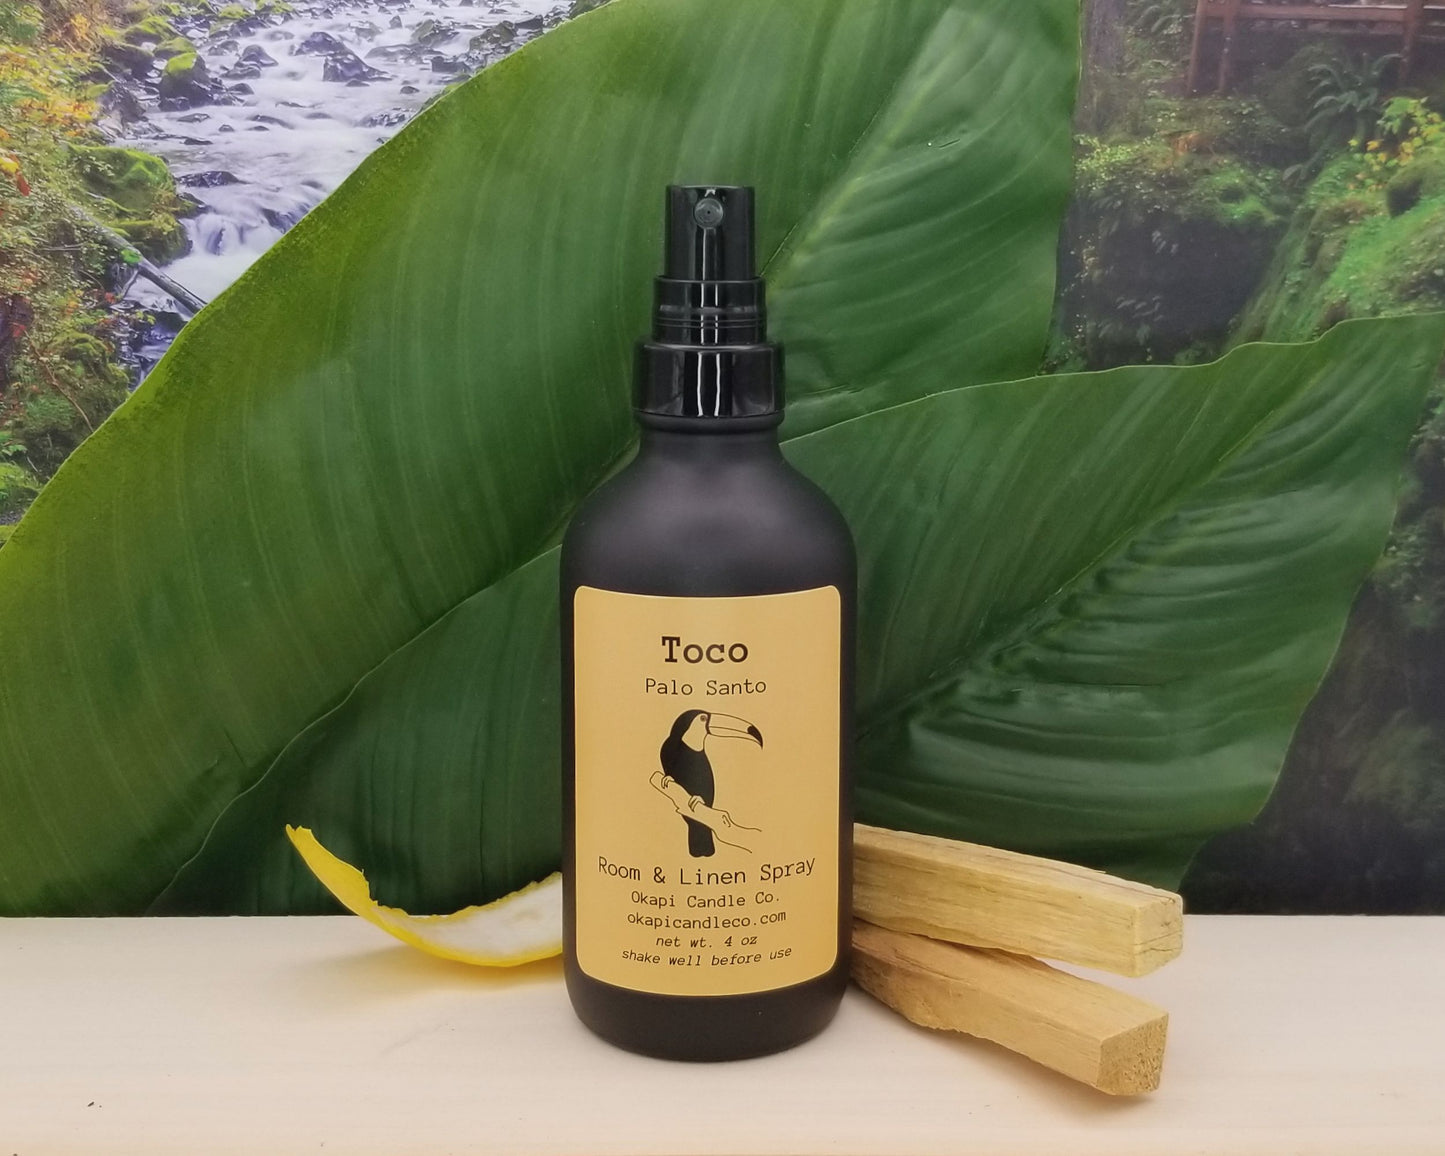 Toco Toucan Room & Linen Spray - Palo Santo Fragrance